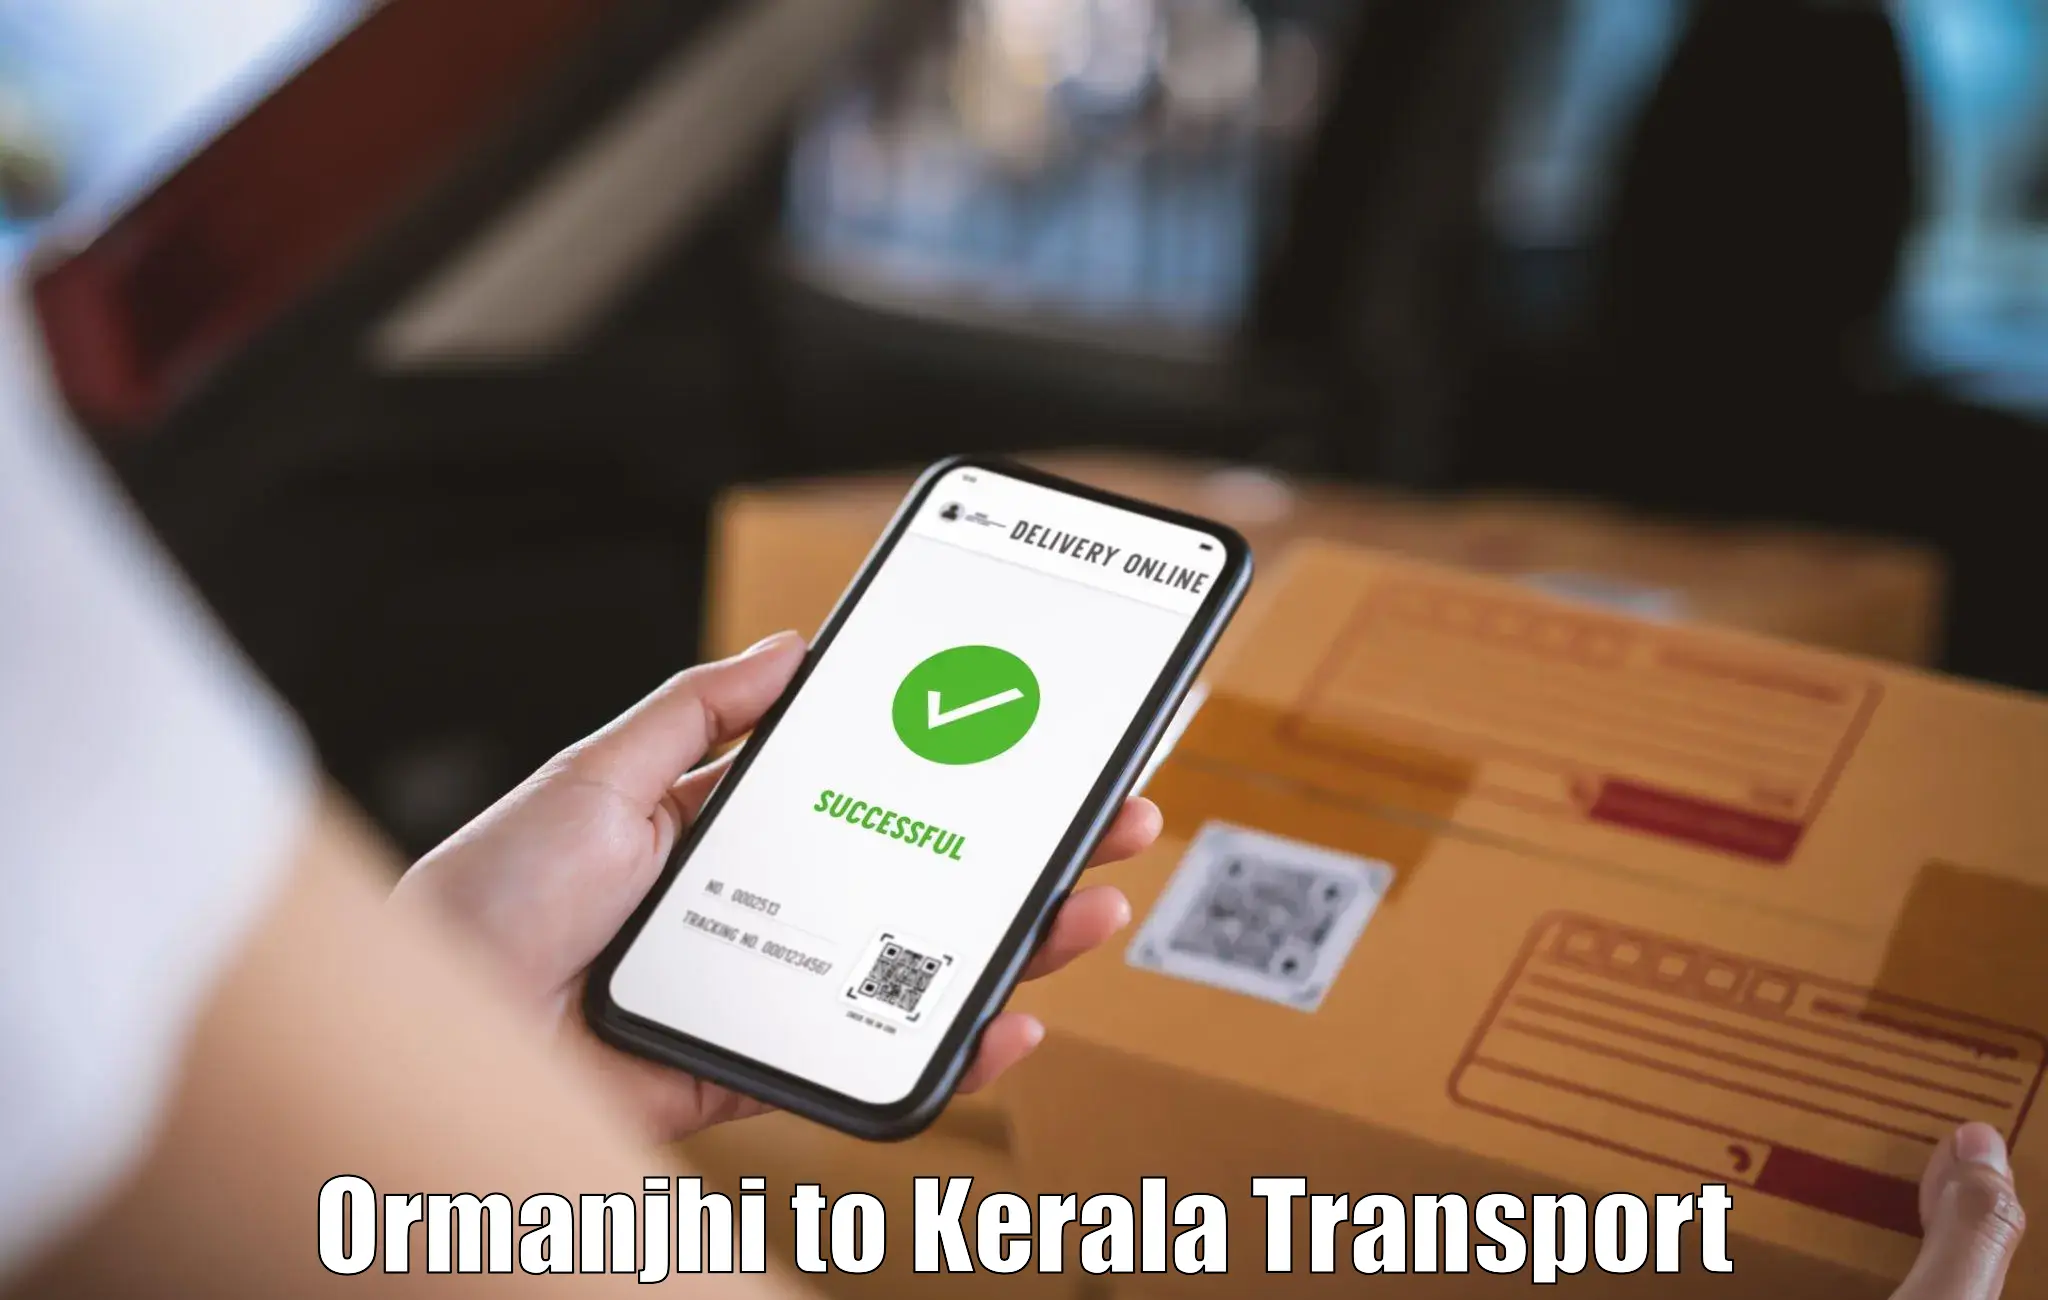 Furniture transport service Ormanjhi to Kiliyanthara